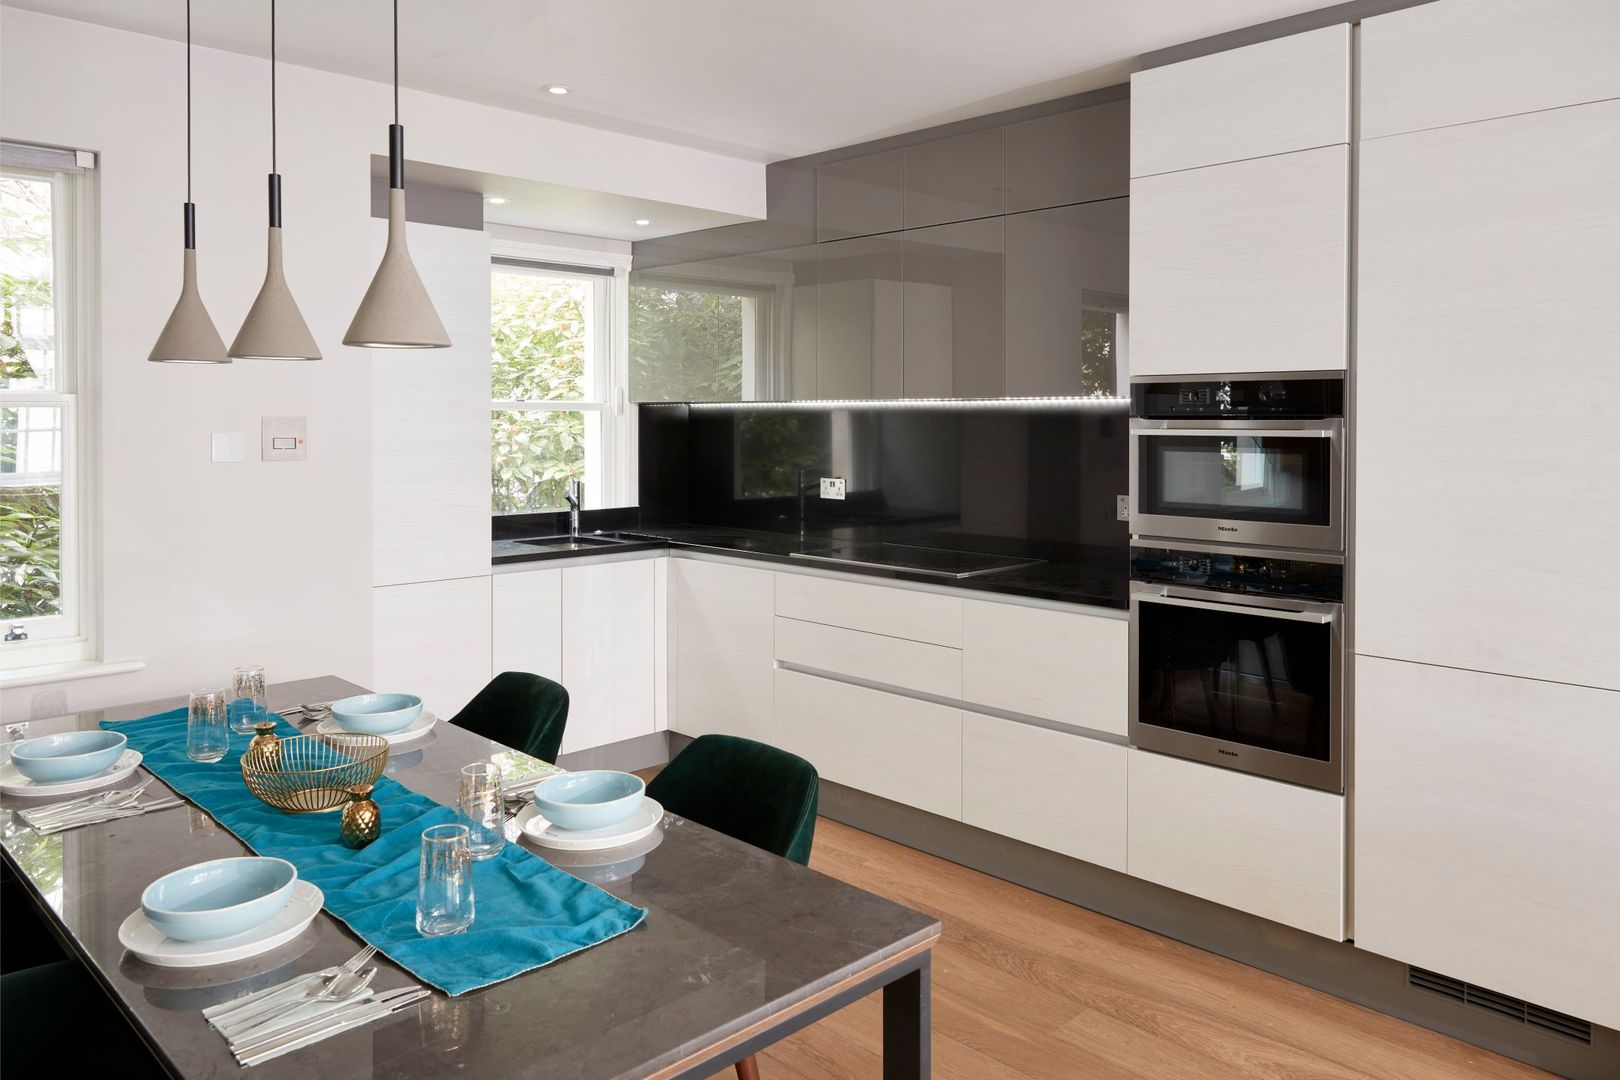 Smart kitchen and dining area Urbanist Architecture Cocinas equipadas Metal modern,kitchen